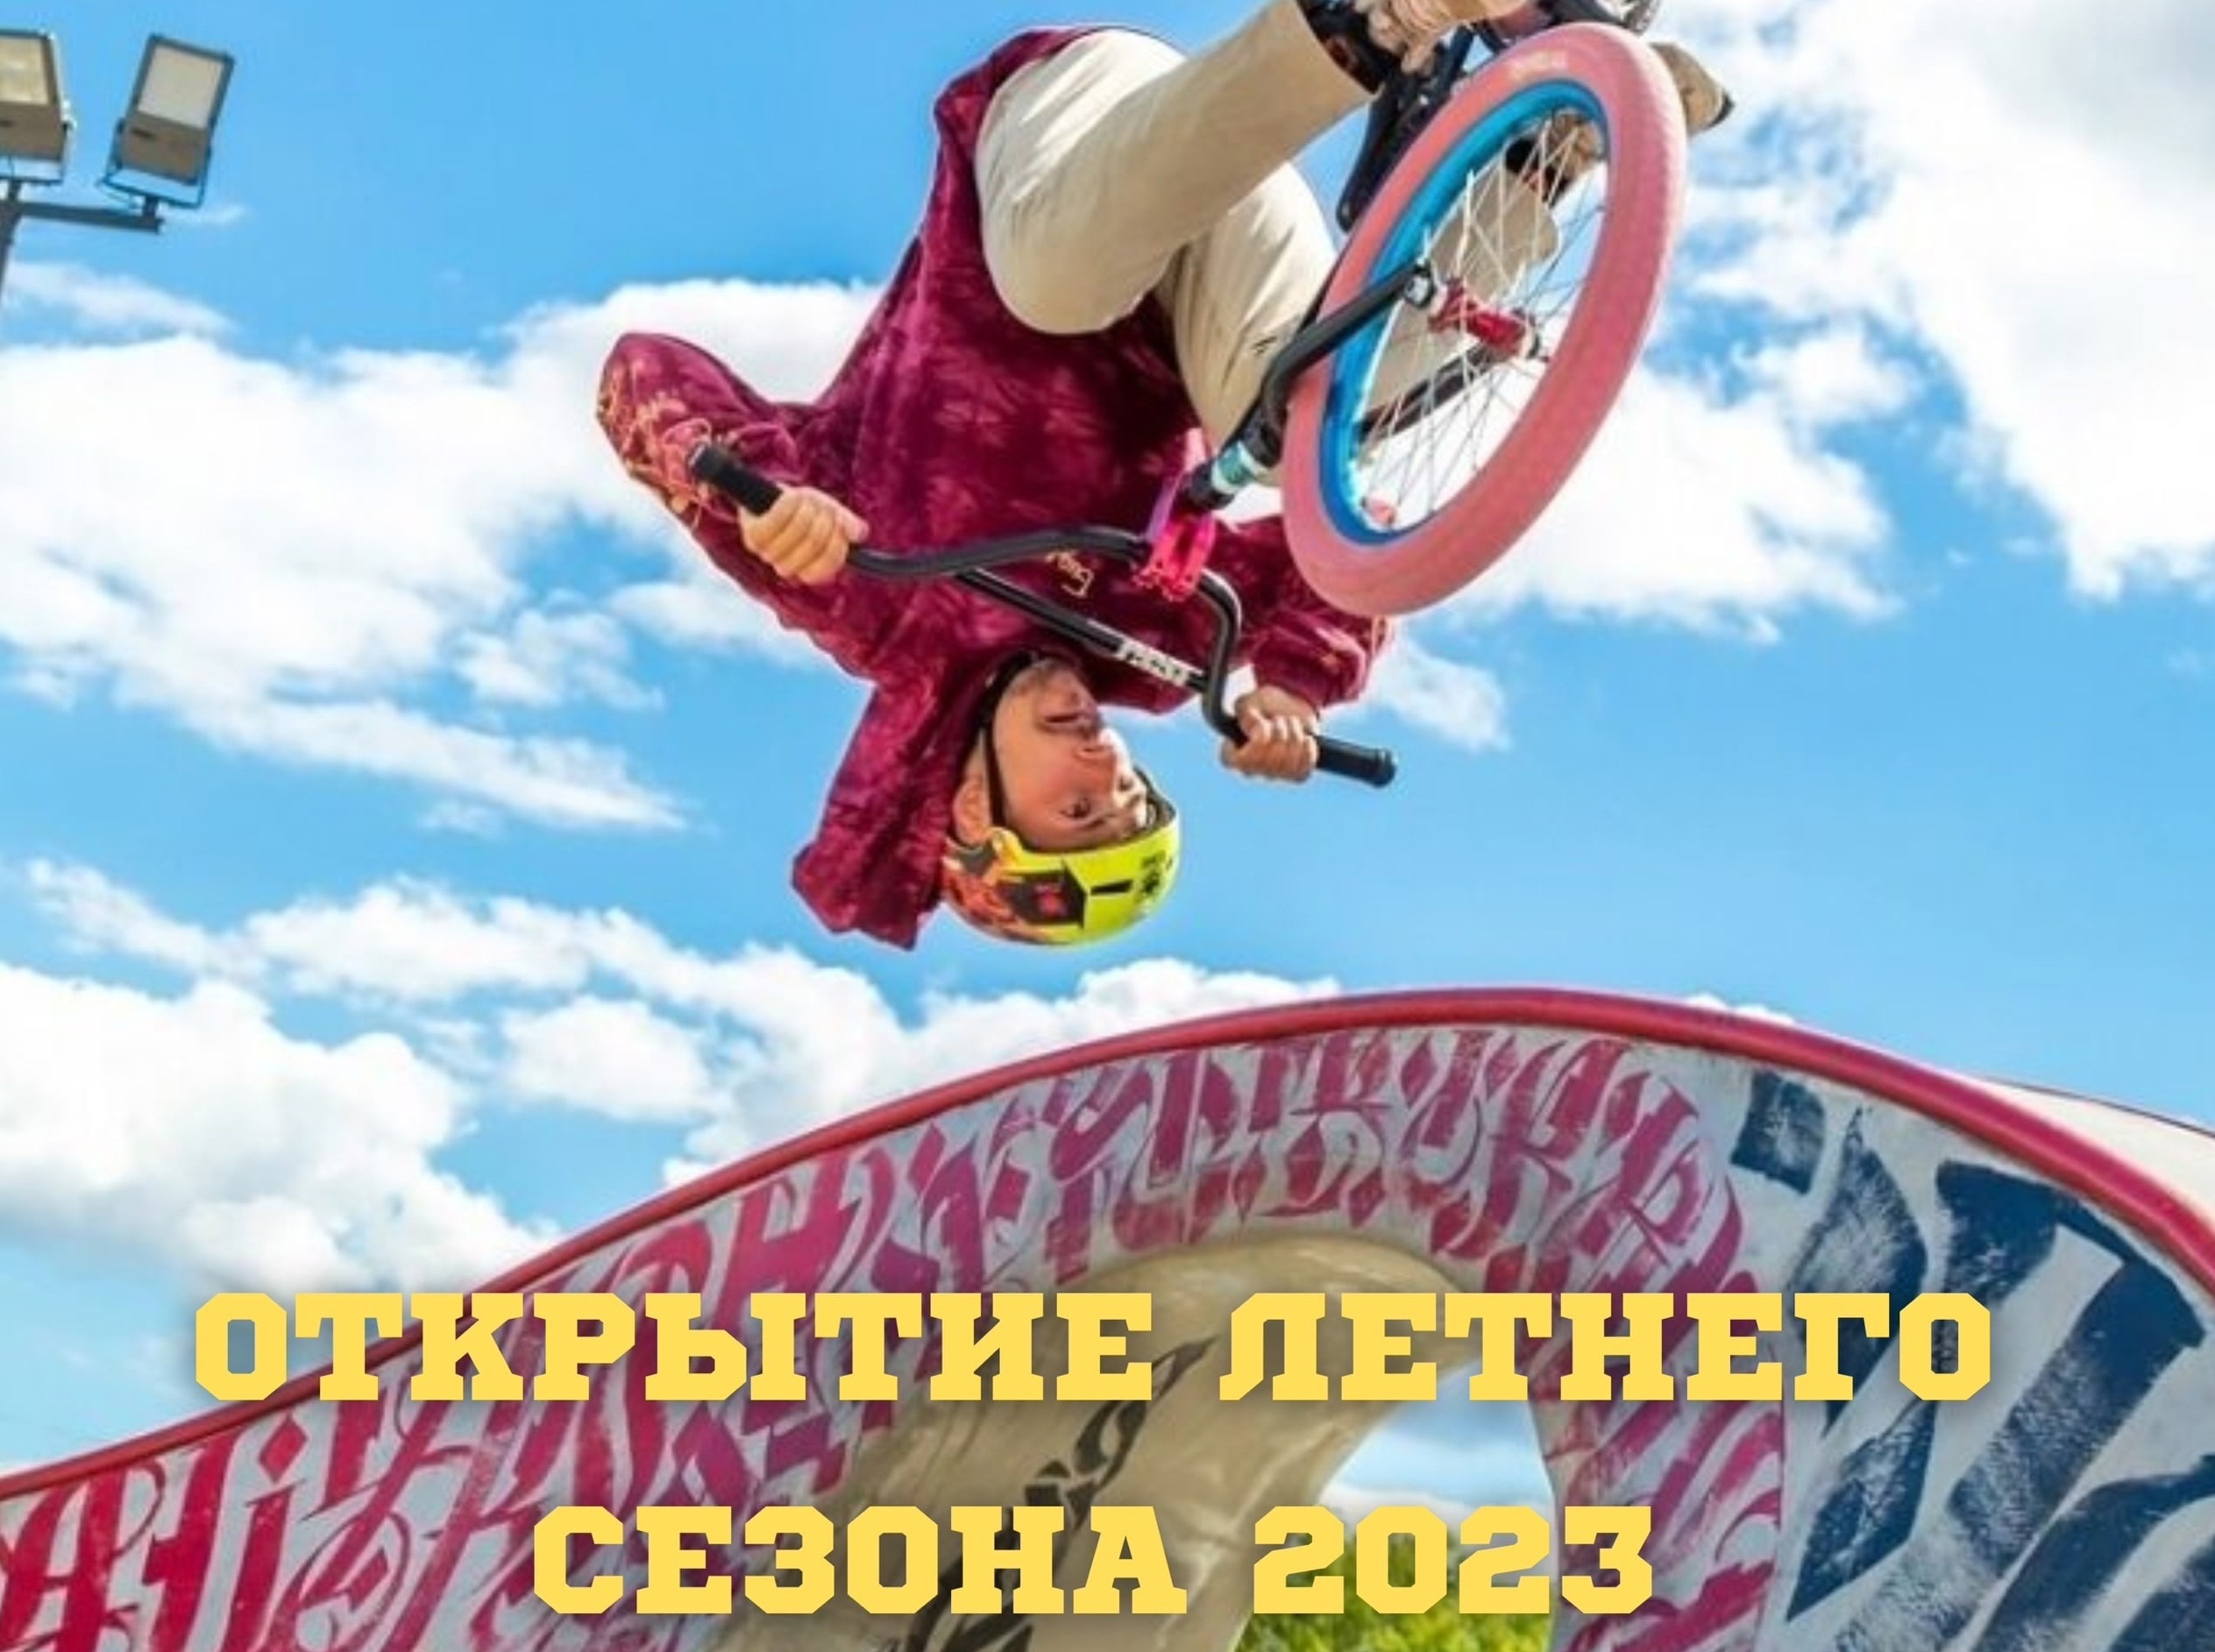 Во Дворце игровых видов спорта в Иванове пройдет праздник "Открытие летнего сезона – 2023"